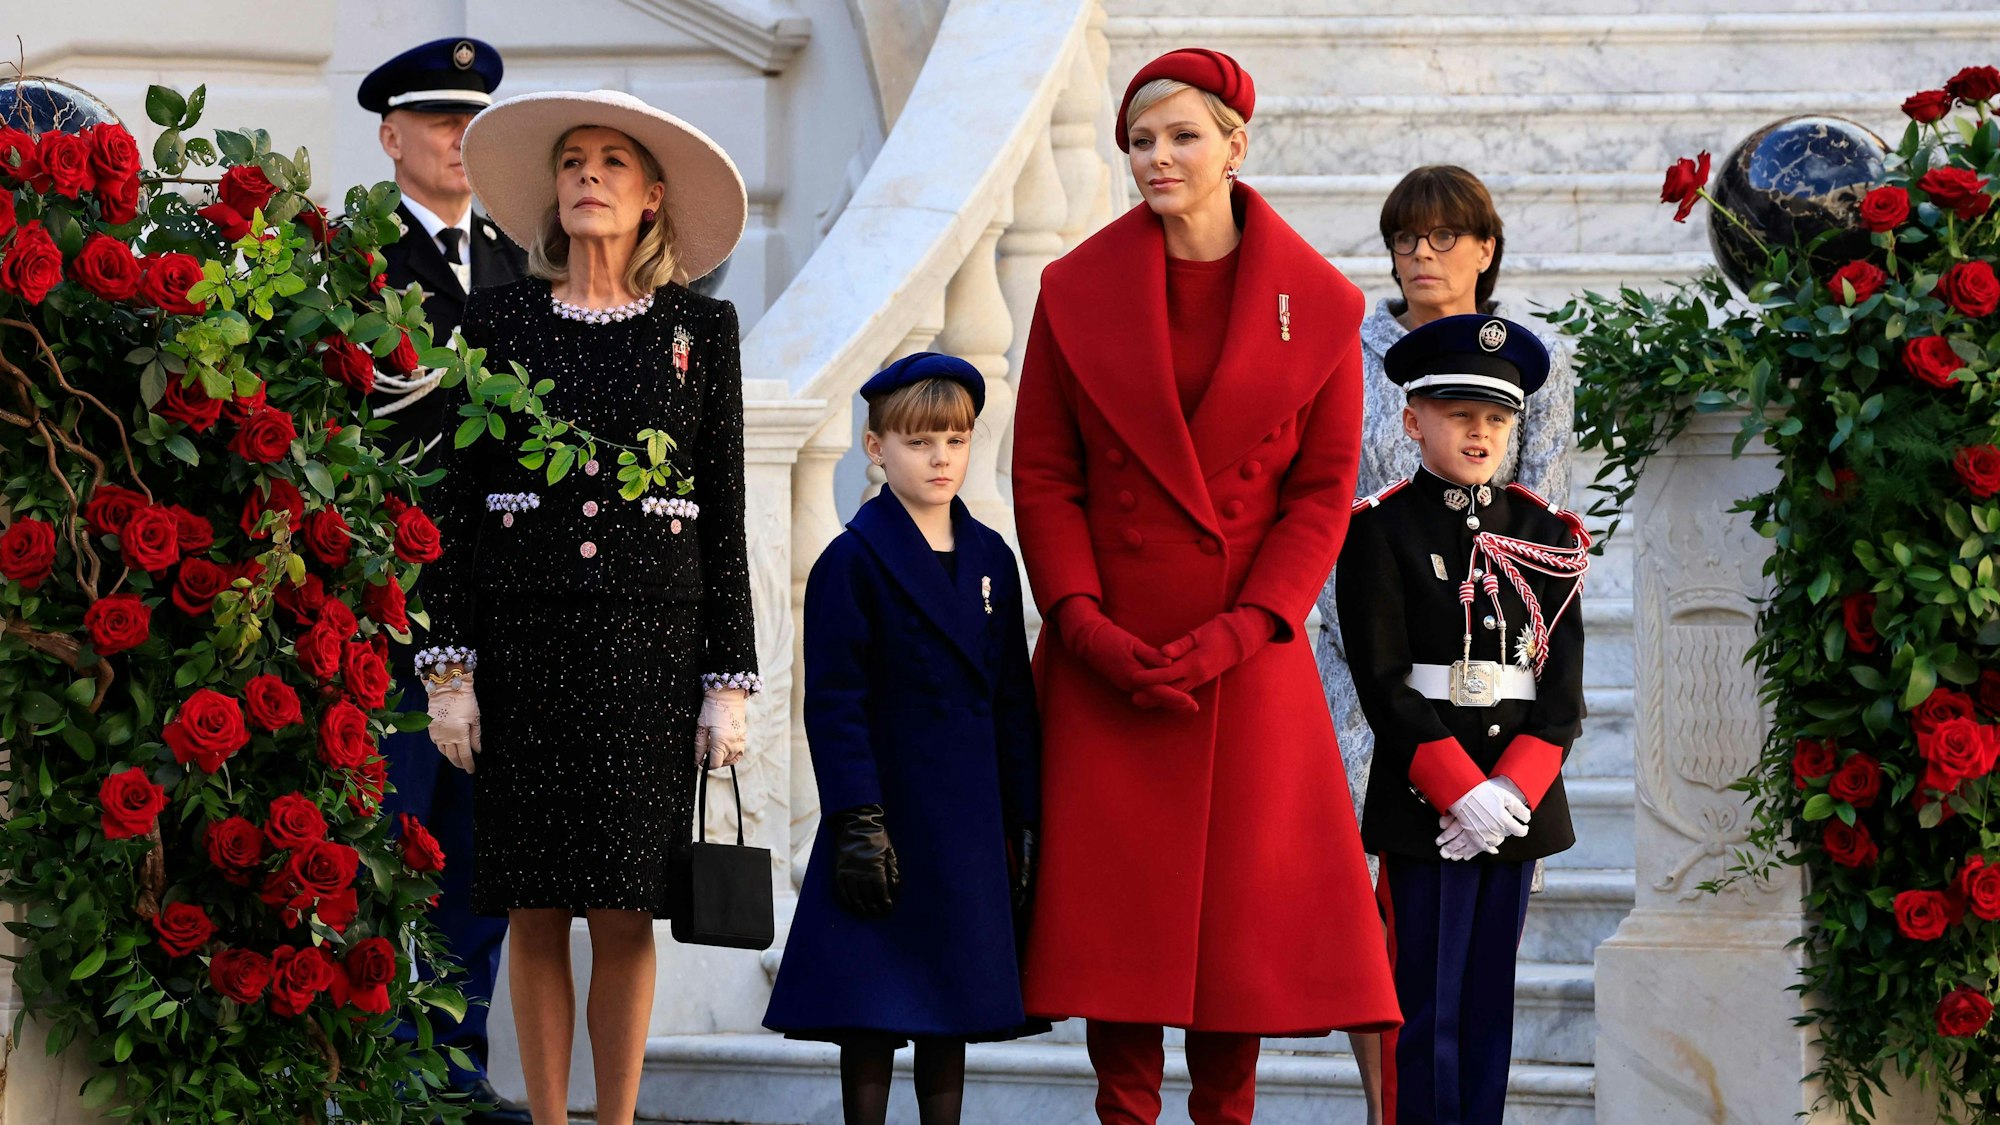 Fürstin Caroline, Fürstin Gabriella, Fürstin Charlène, Fürst Jacques und Fürstin Stephanie nehmen an einer Zeremonie zum Nationalfeiertag in Monaco teil